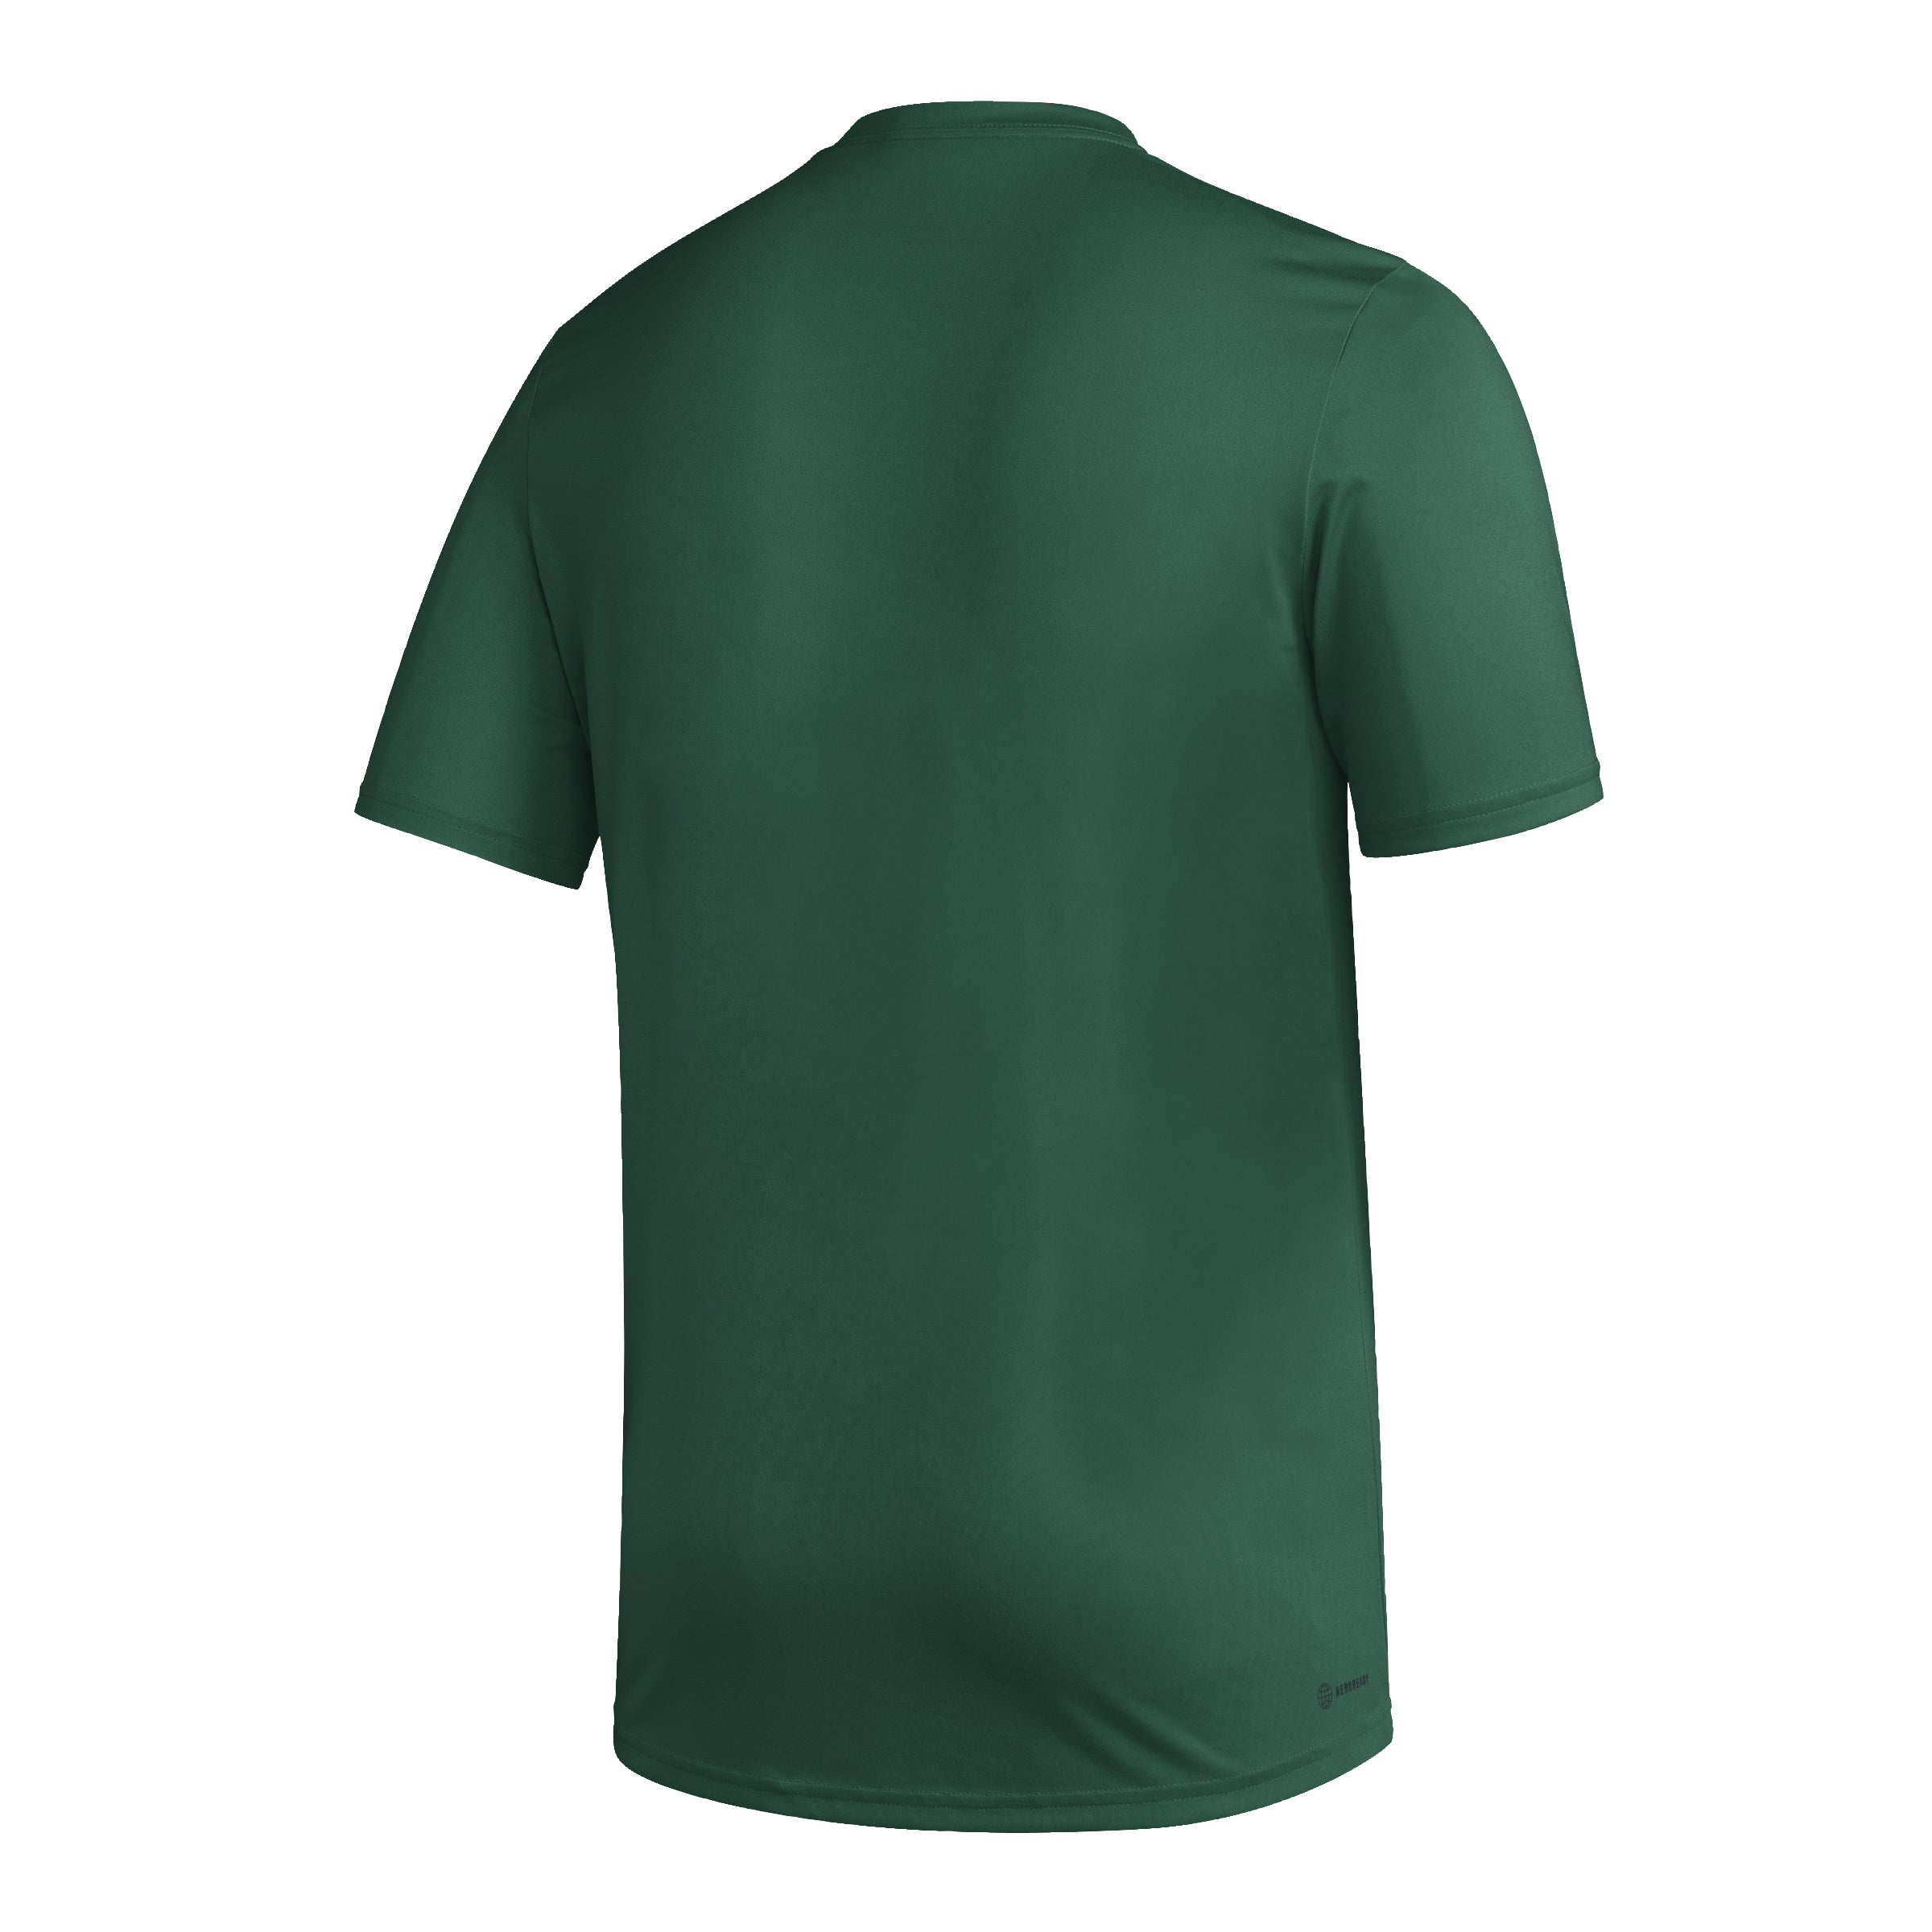 Miami Hurricanes adidas Old English M Aeroready Pregame T-Shirt - Green